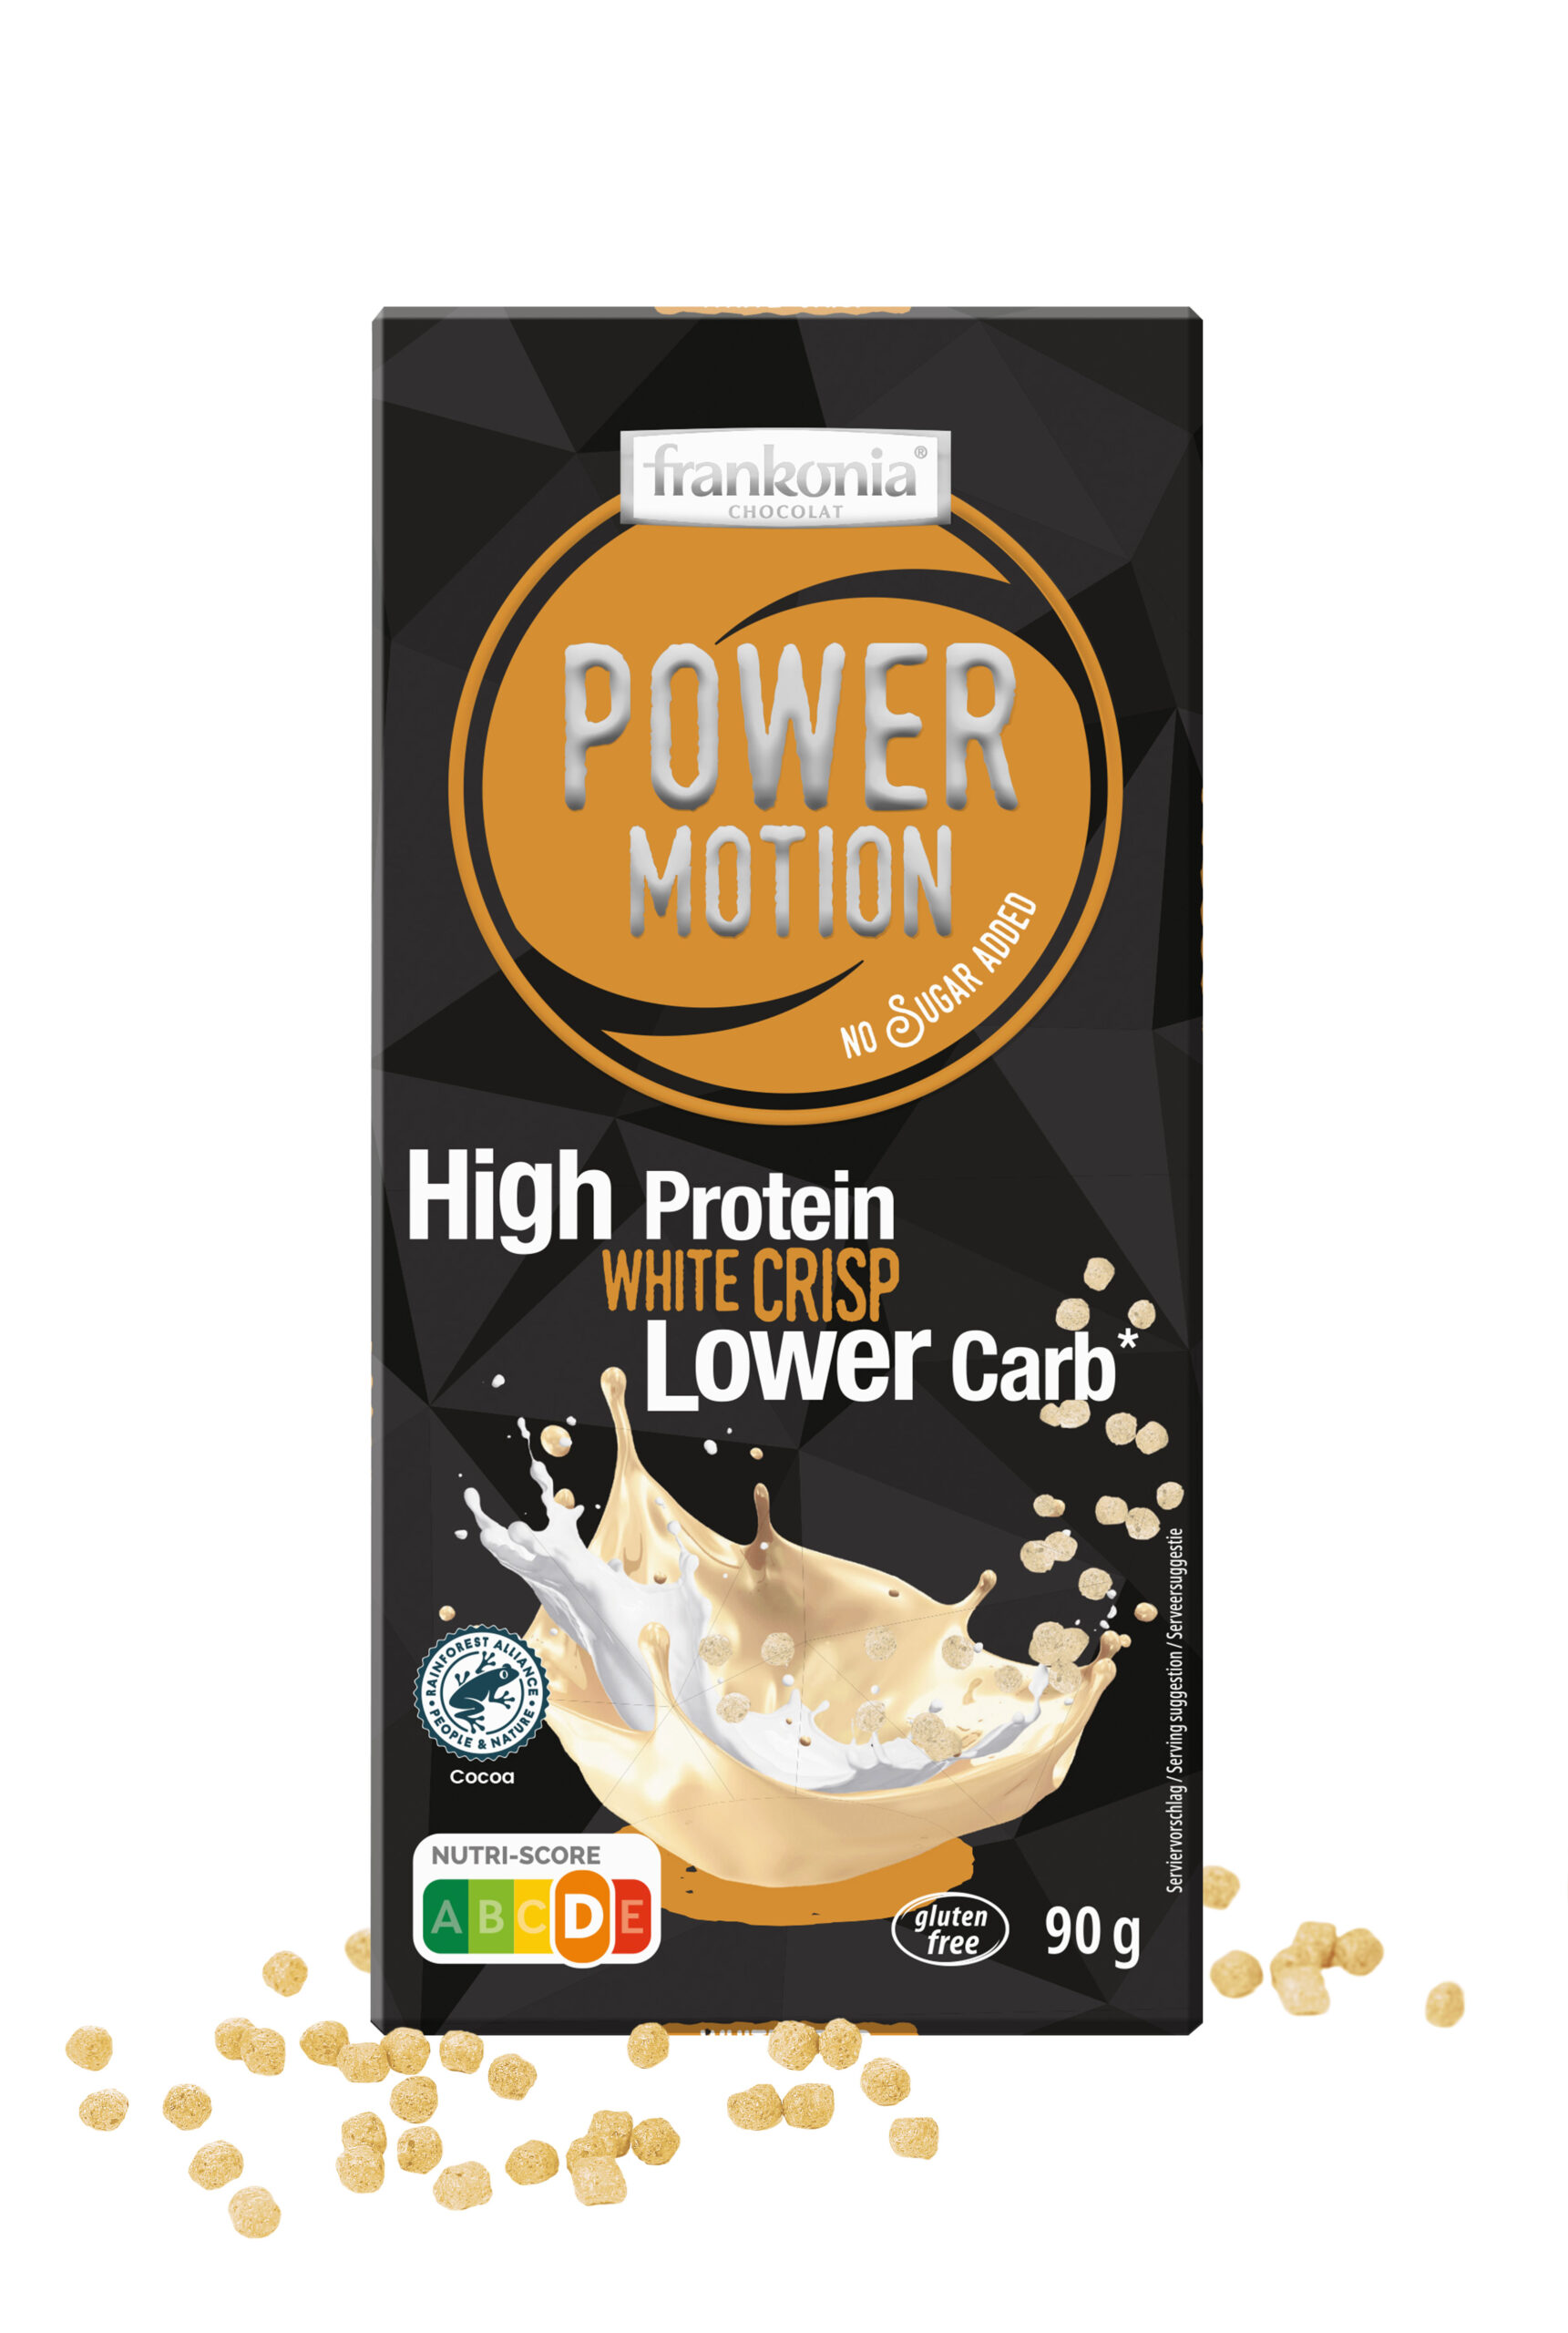 Power Motion High Protein White Crisp